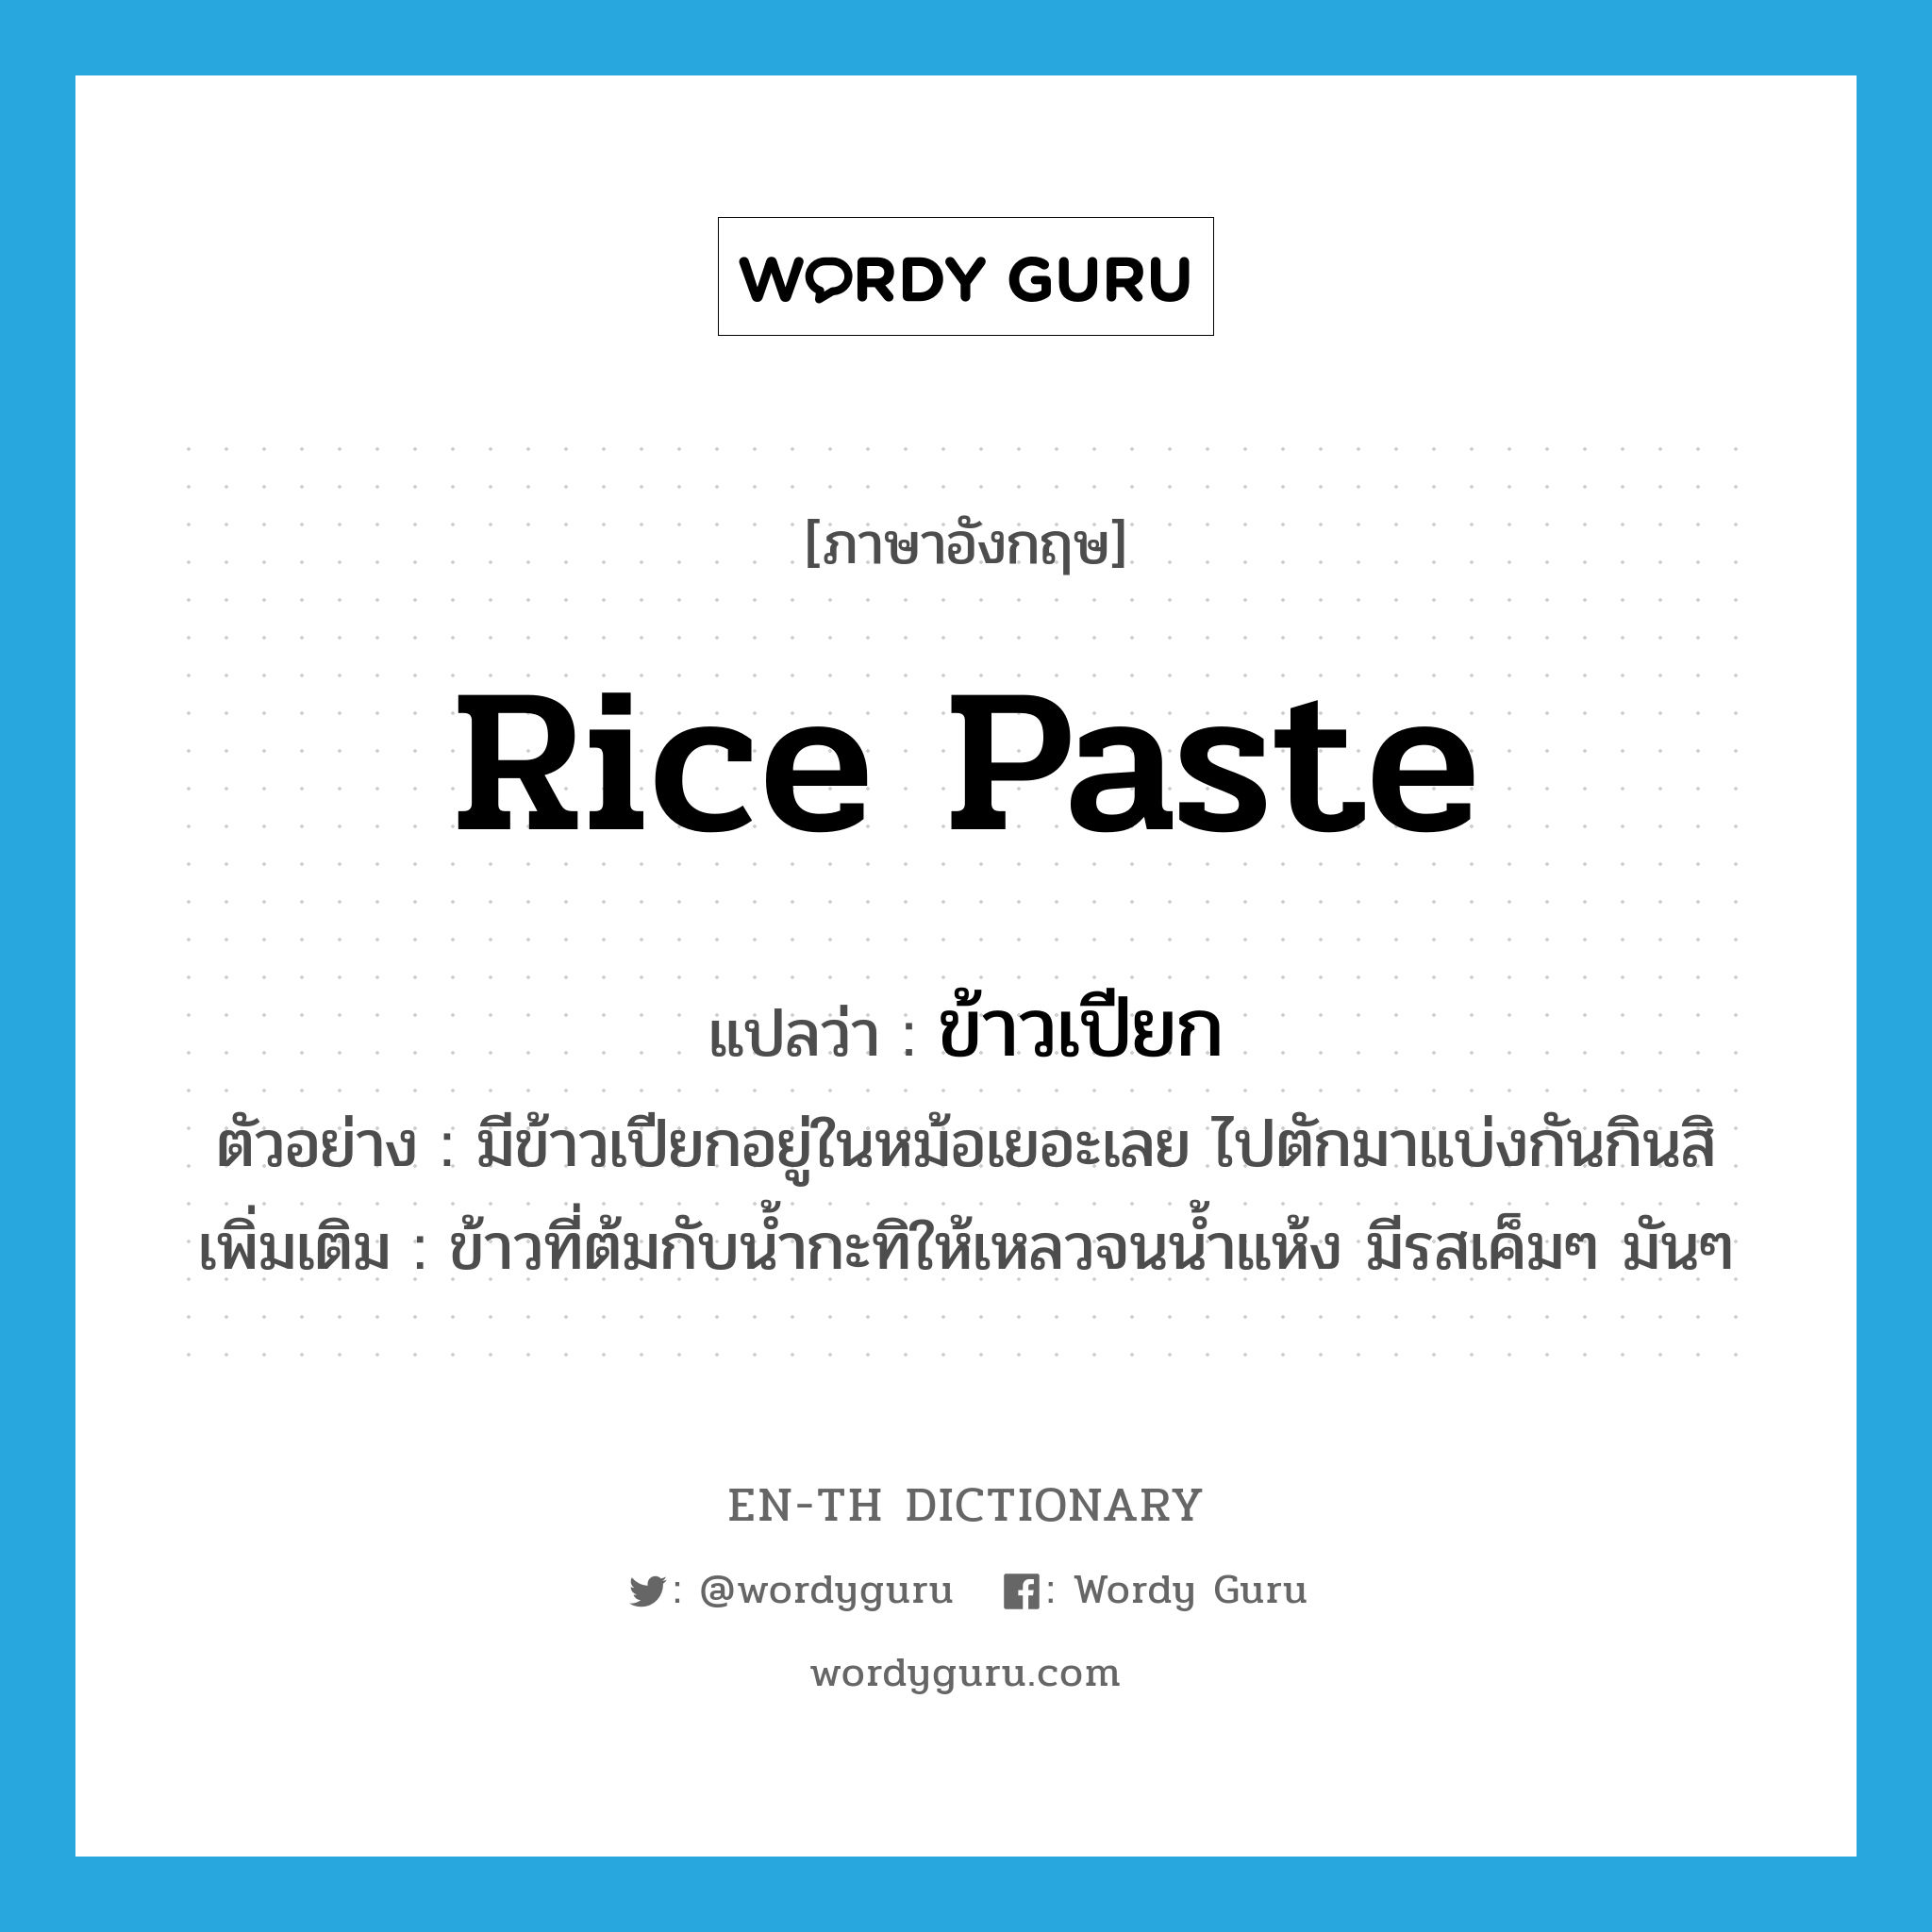 ข้าวเปียก ภาษาอังกฤษ?, คำศัพท์ภาษาอังกฤษ ข้าวเปียก แปลว่า rice paste ประเภท N ตัวอย่าง มีข้าวเปียกอยู่ในหม้อเยอะเลย ไปตักมาแบ่งกันกินสิ เพิ่มเติม ข้าวที่ต้มกับน้ำกะทิให้เหลวจนน้ำแห้ง มีรสเค็มๆ มันๆ หมวด N